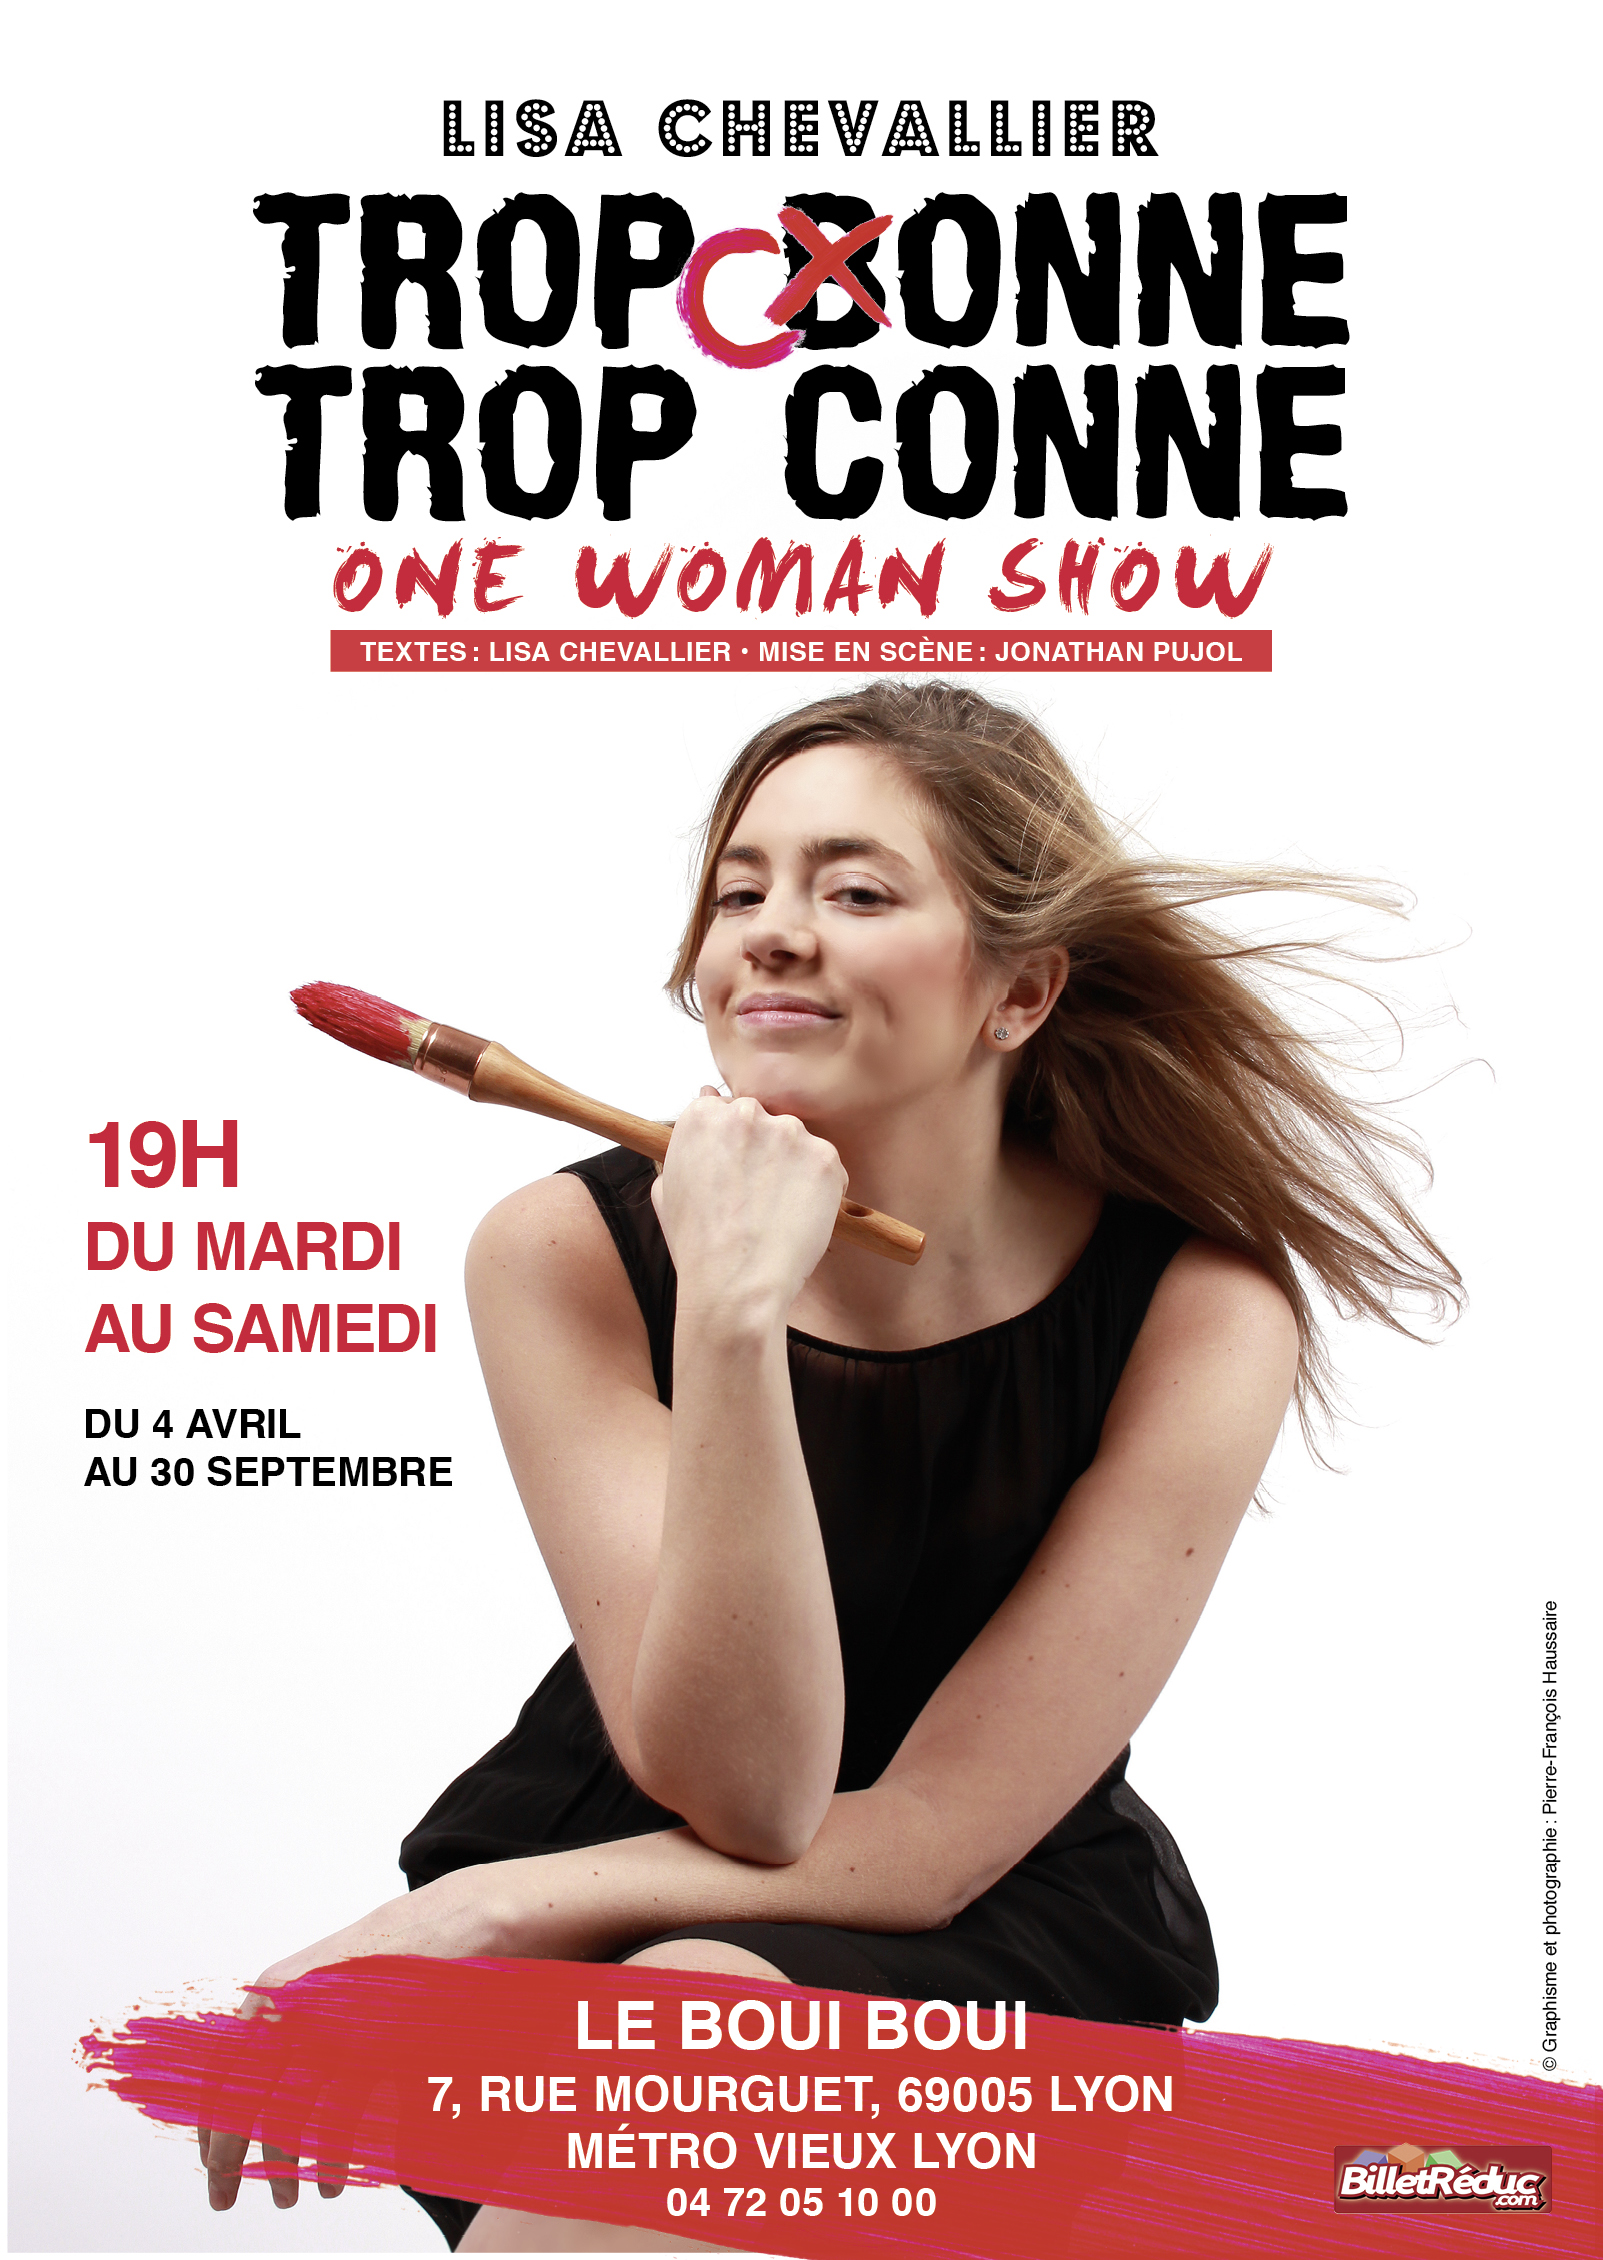 Lisa CHEVALLIER, le 4 Avril - Boui Boui Café Comique